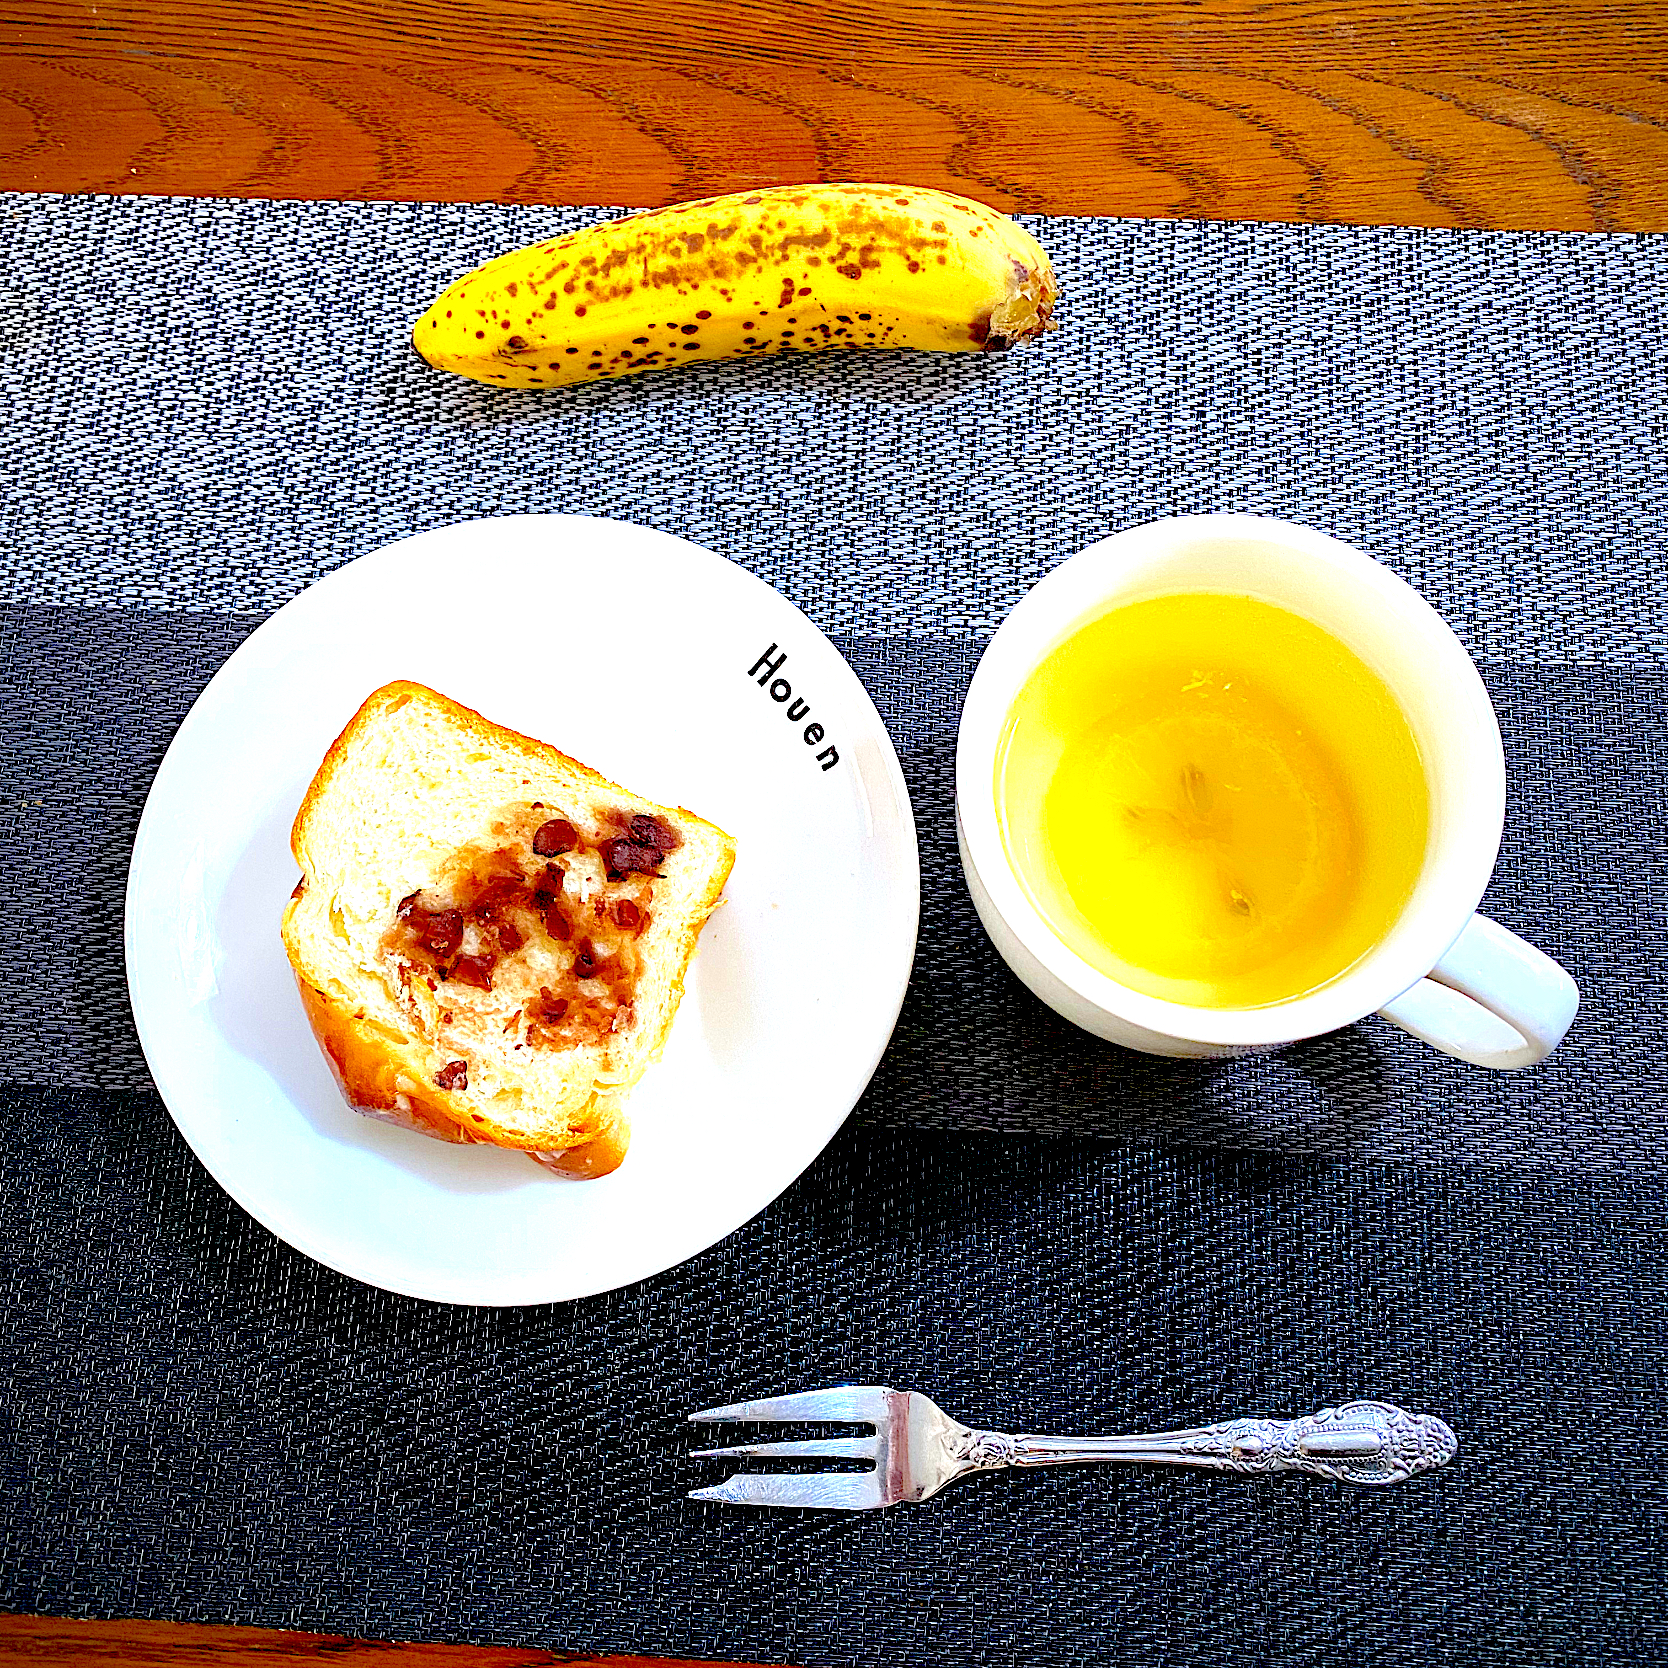 12月 2日  朝ごはん  粒あんリングパン、カフェオレ、バナナ